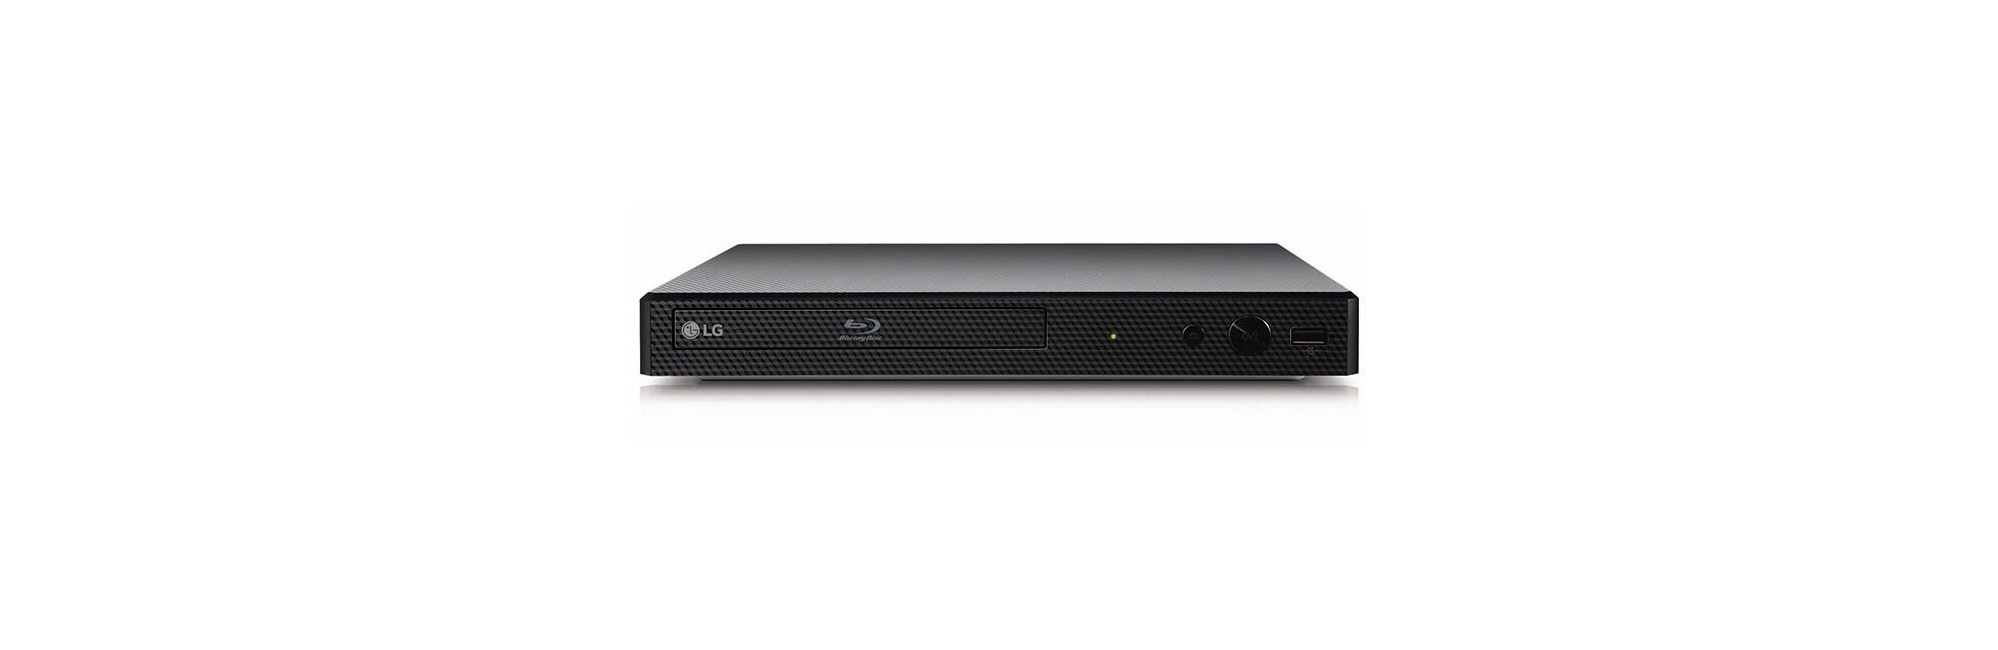 LG BP350 Blu-Ray player 2.0 Black